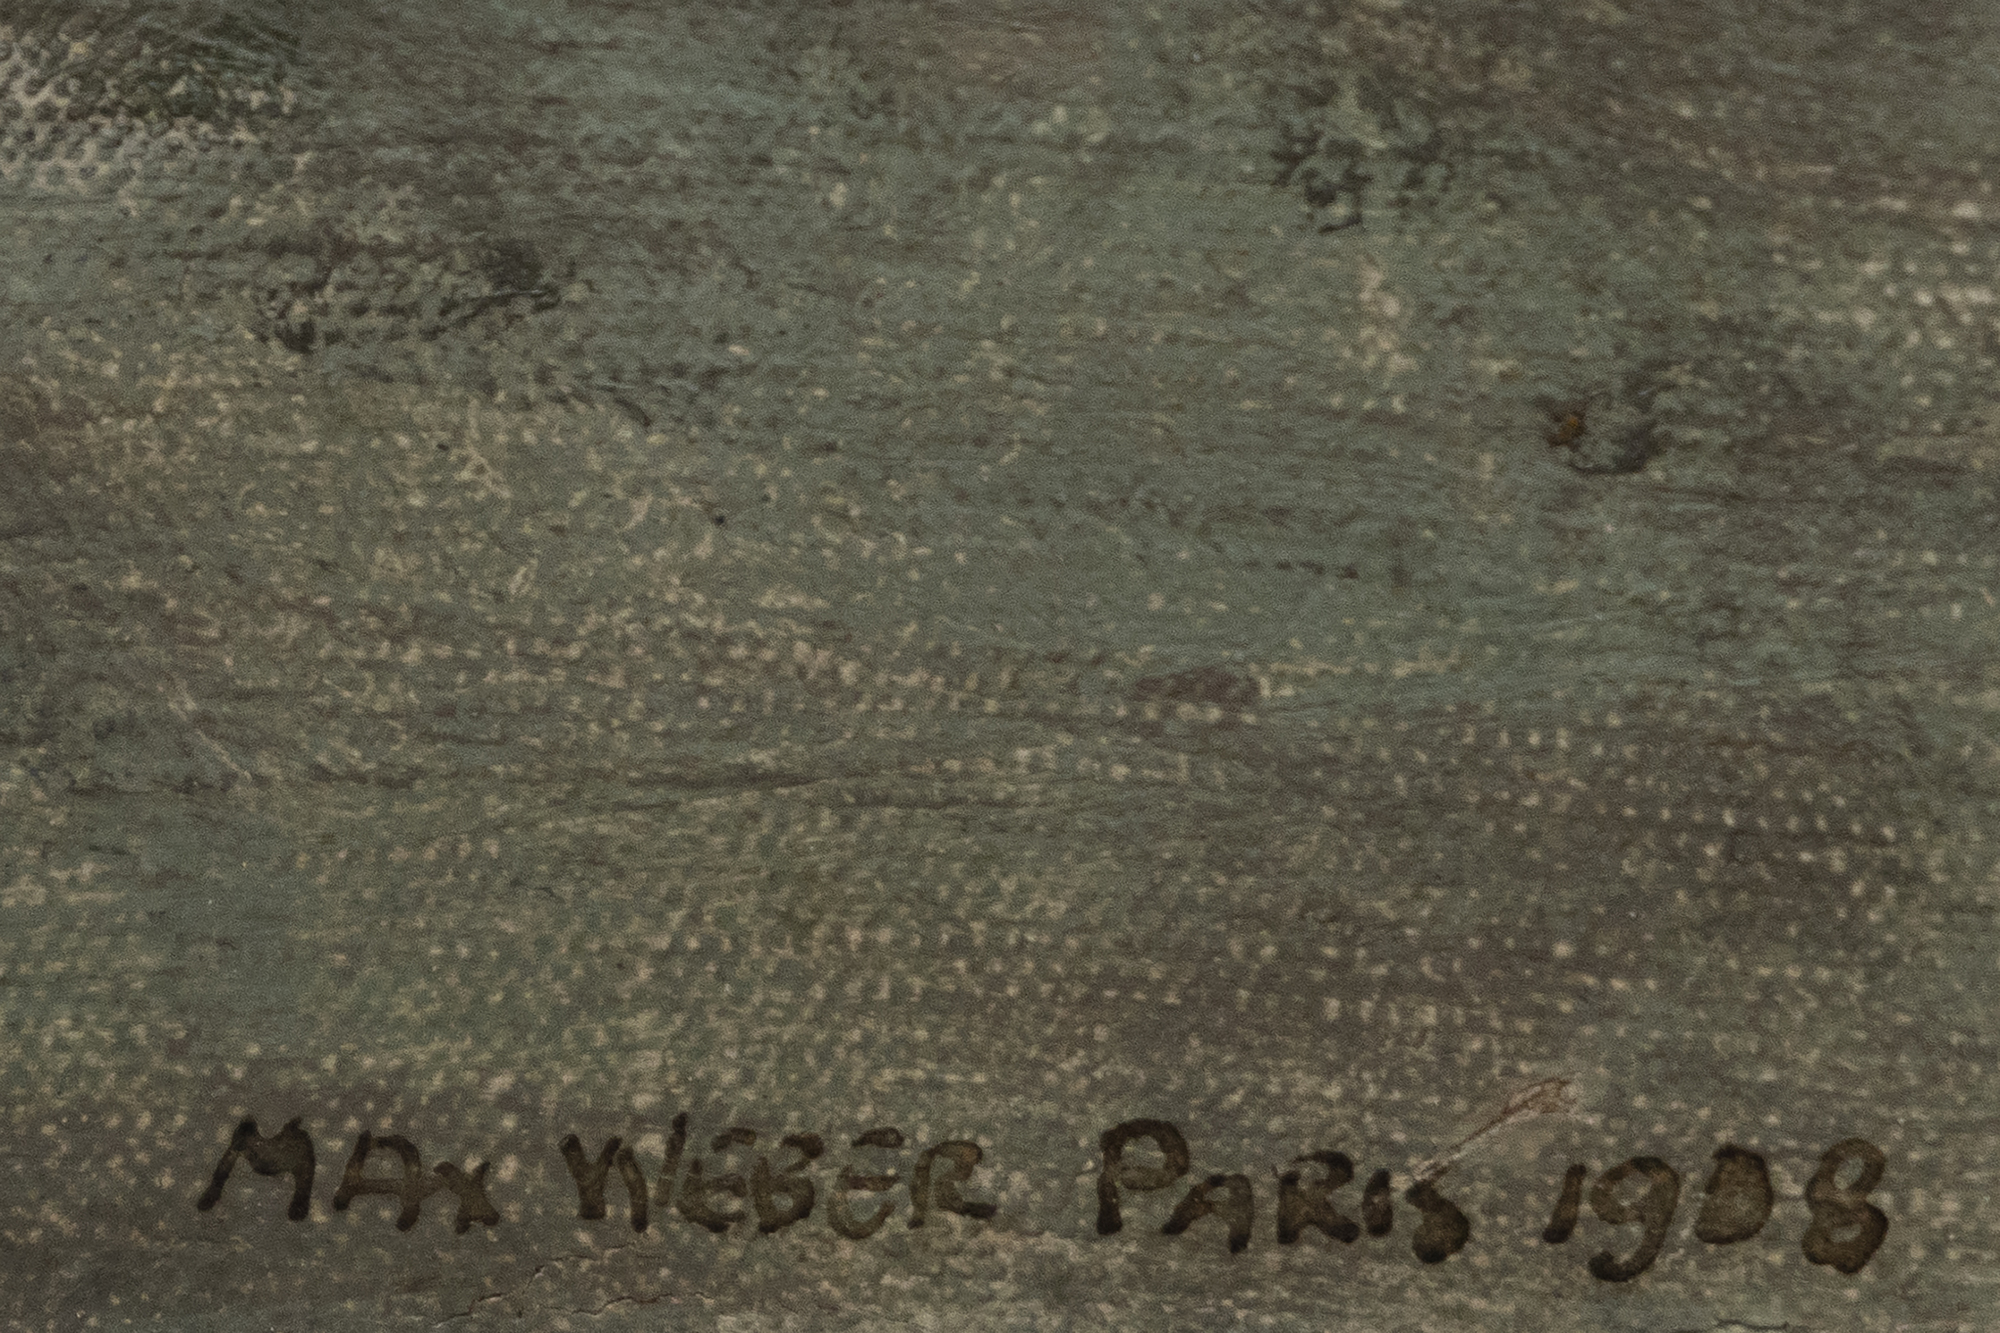 انتقل ماكس ويبر إلى باريس في عام 1905 عندما كانت المدينة مركز الابتكار الفني. تظهر أعماله المبكرة التأثير المعاصر للوحة الألوان الجريئة ل Fauvism وتمثيل التكعيبية المجزأ للواقع. ومع ذلك ، لم يقلد ويبر هذه الأساليب فقط. قام بدمجها وإعادة تفسيرها لإنشاء شيء خاص به. لا تكمن أهمية فيبر في أعماله التجريدية فحسب ، بل تكمن أيضا في دوره كقناة للأفكار الحداثية. لعب فيبر دورا حاسما في الحوار عبر الأطلسي الذي ساعد في تشكيل مسار الفن الأمريكي في القرن العشرين. تعرض صوره للشخصيات النسائية توليفة من التجريد والتمثيل ، وتلتقط جوهر موضوعاته مع الابتعاد عن الأعمال التصويرية التقليدية.